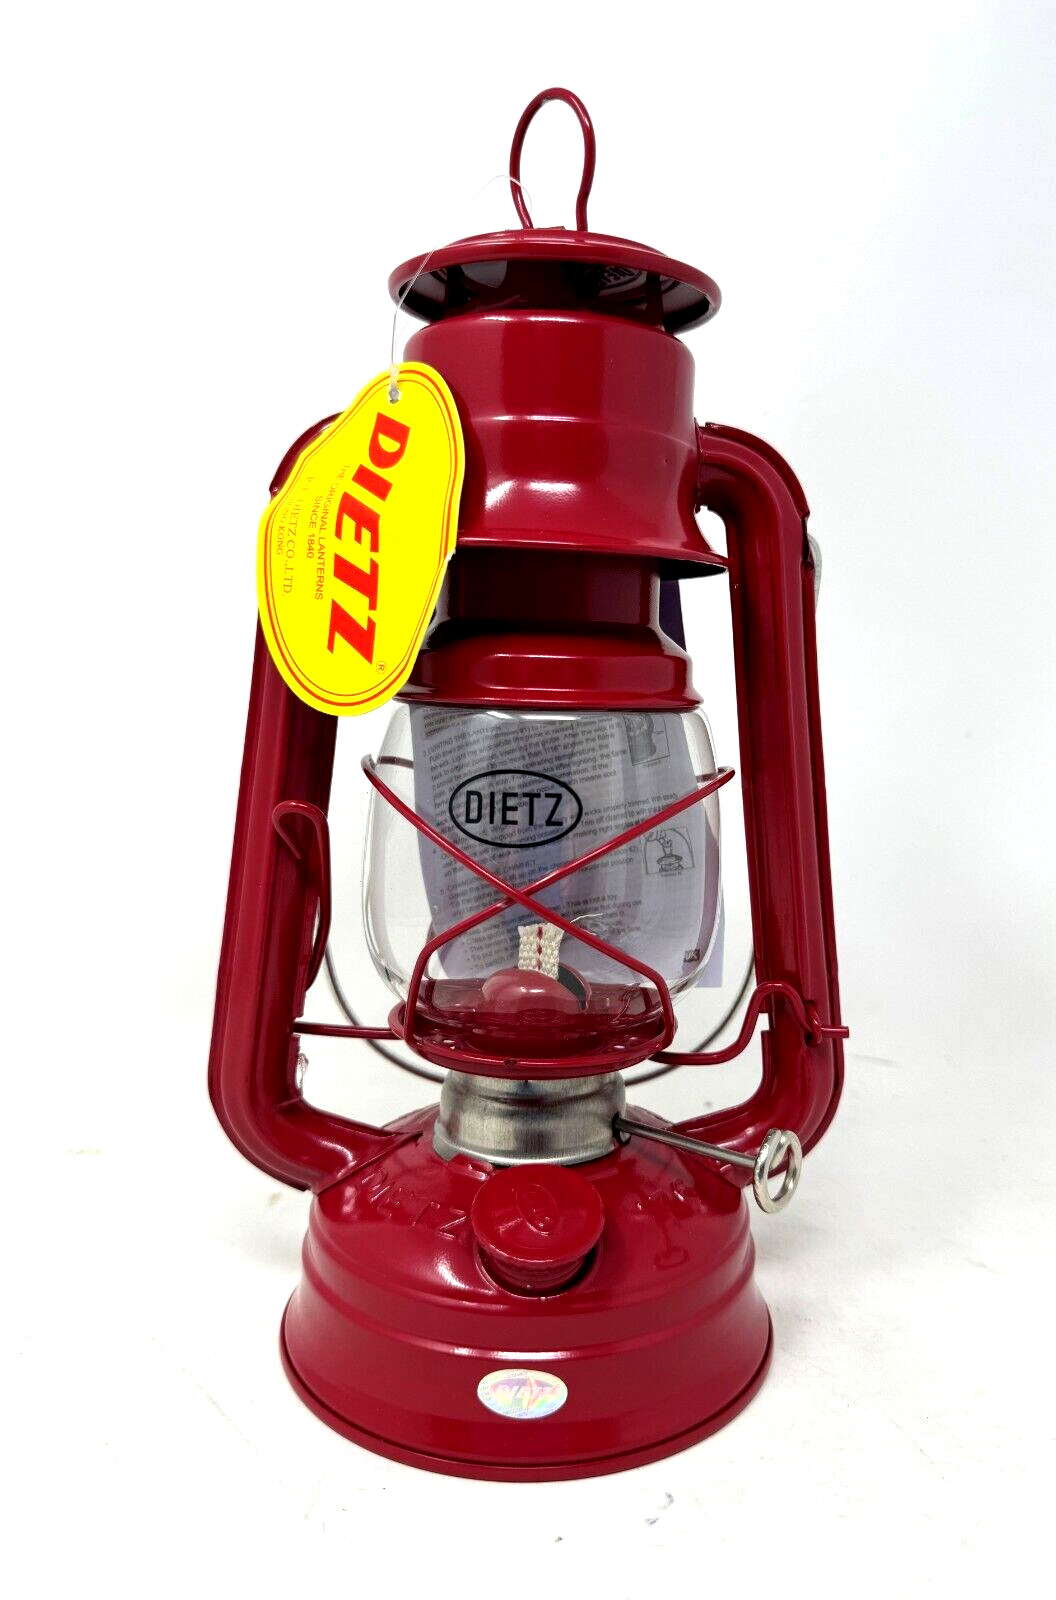 Dietz #76 Original Oil Burning Lantern (Red)